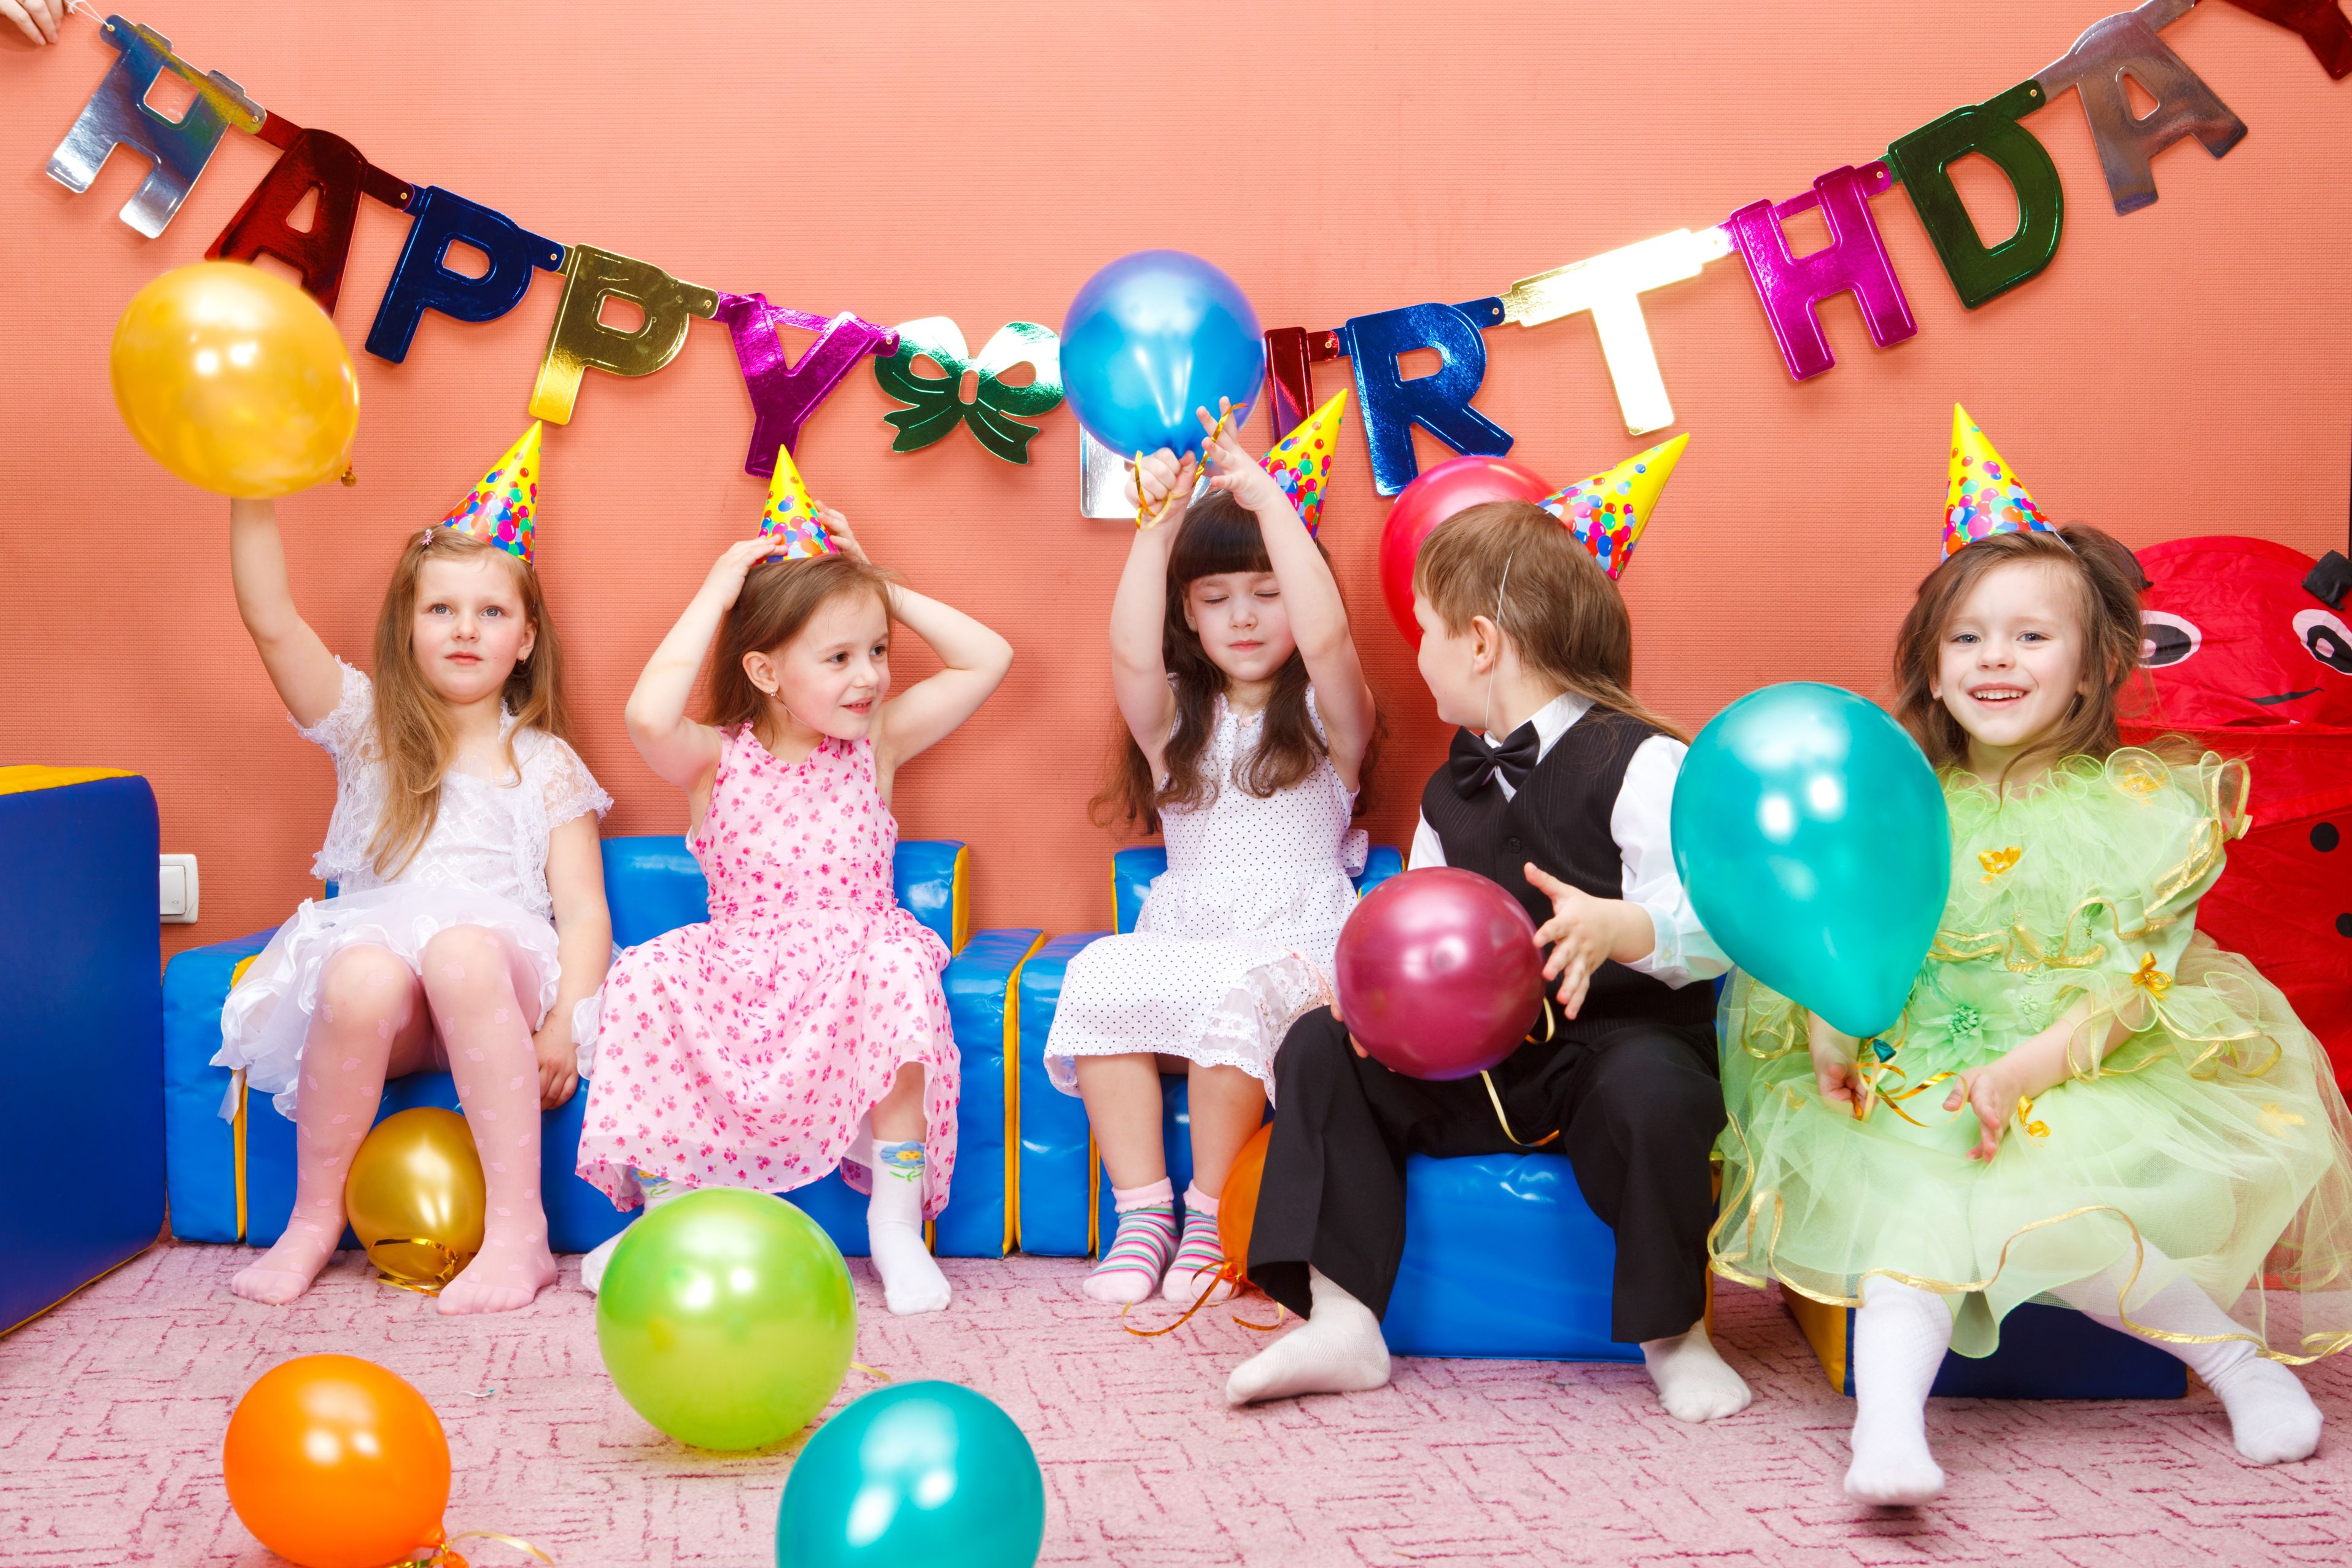 Australie : Dans cette école, les enfants ne peuvent plus distribuer d'invitation à leur anniversaire